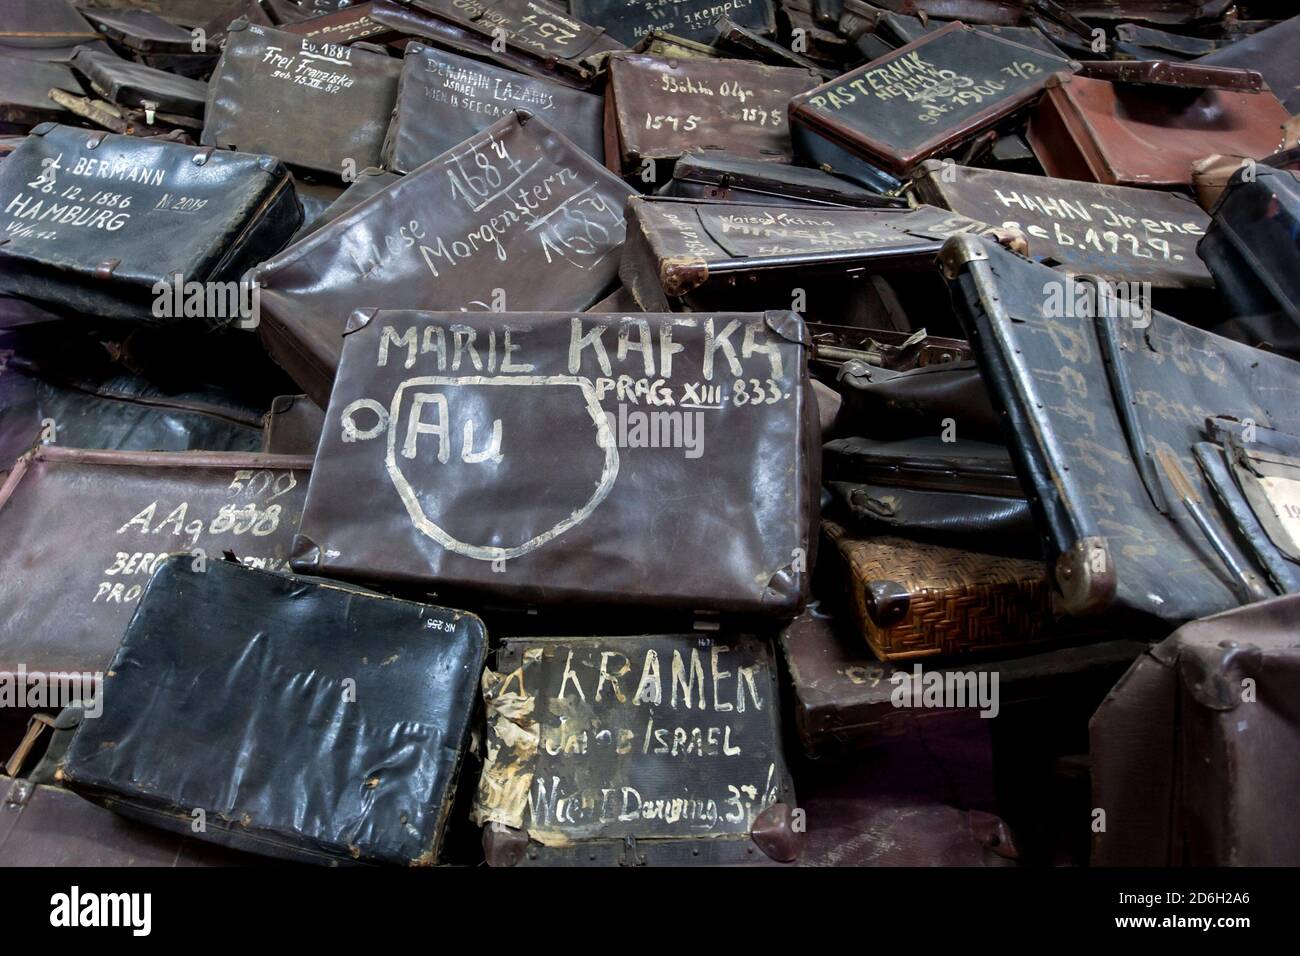 Une pile de valises provenant des arrivées qui ont été entreposées au musée d'État d'Auschwitz-Birkenau en Pologne. Banque D'Images